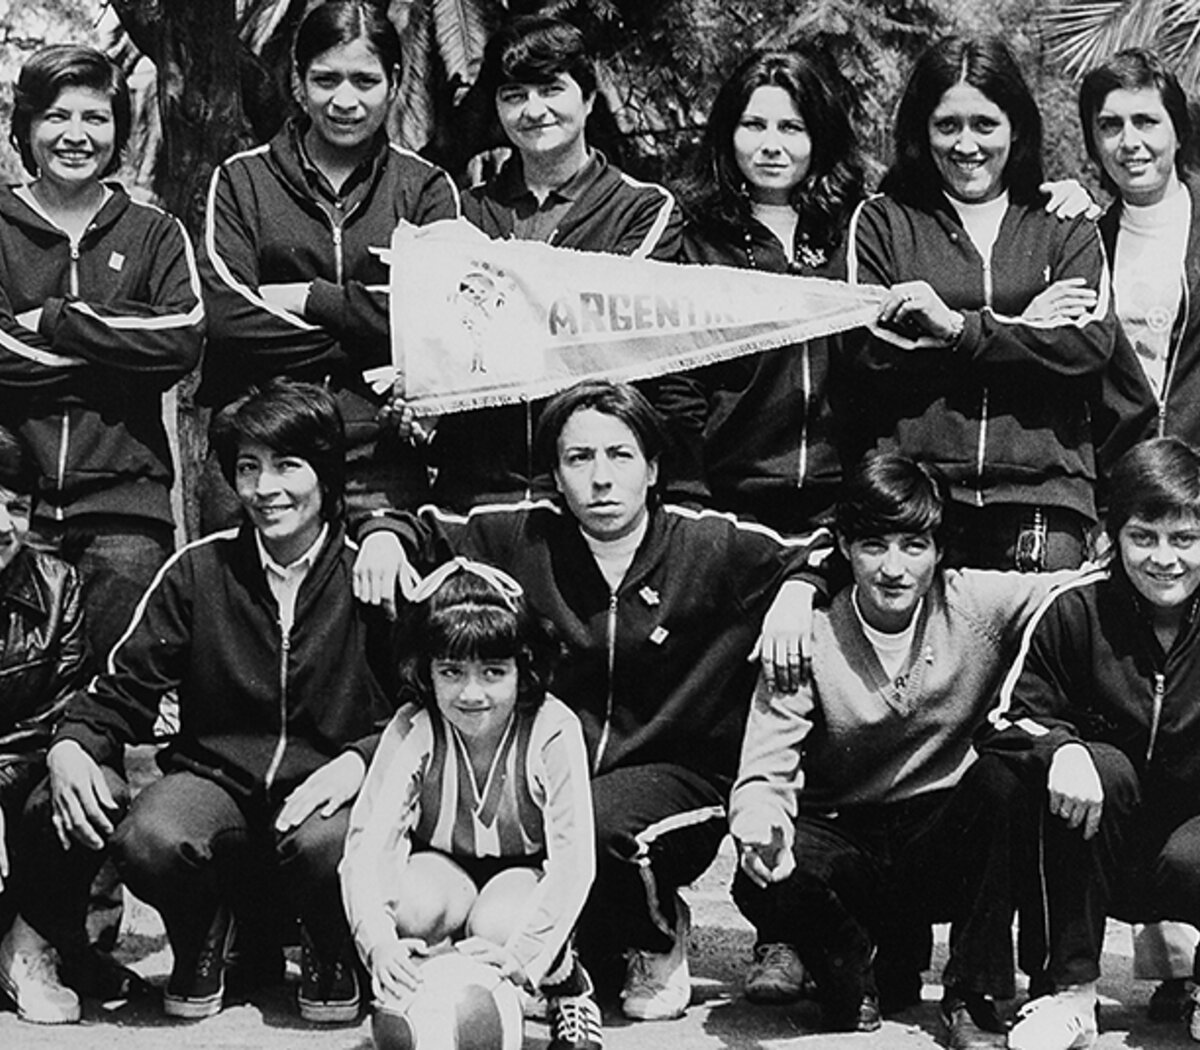 día que Argentina jugó su primer Mundial de fútbol femenino | Página12